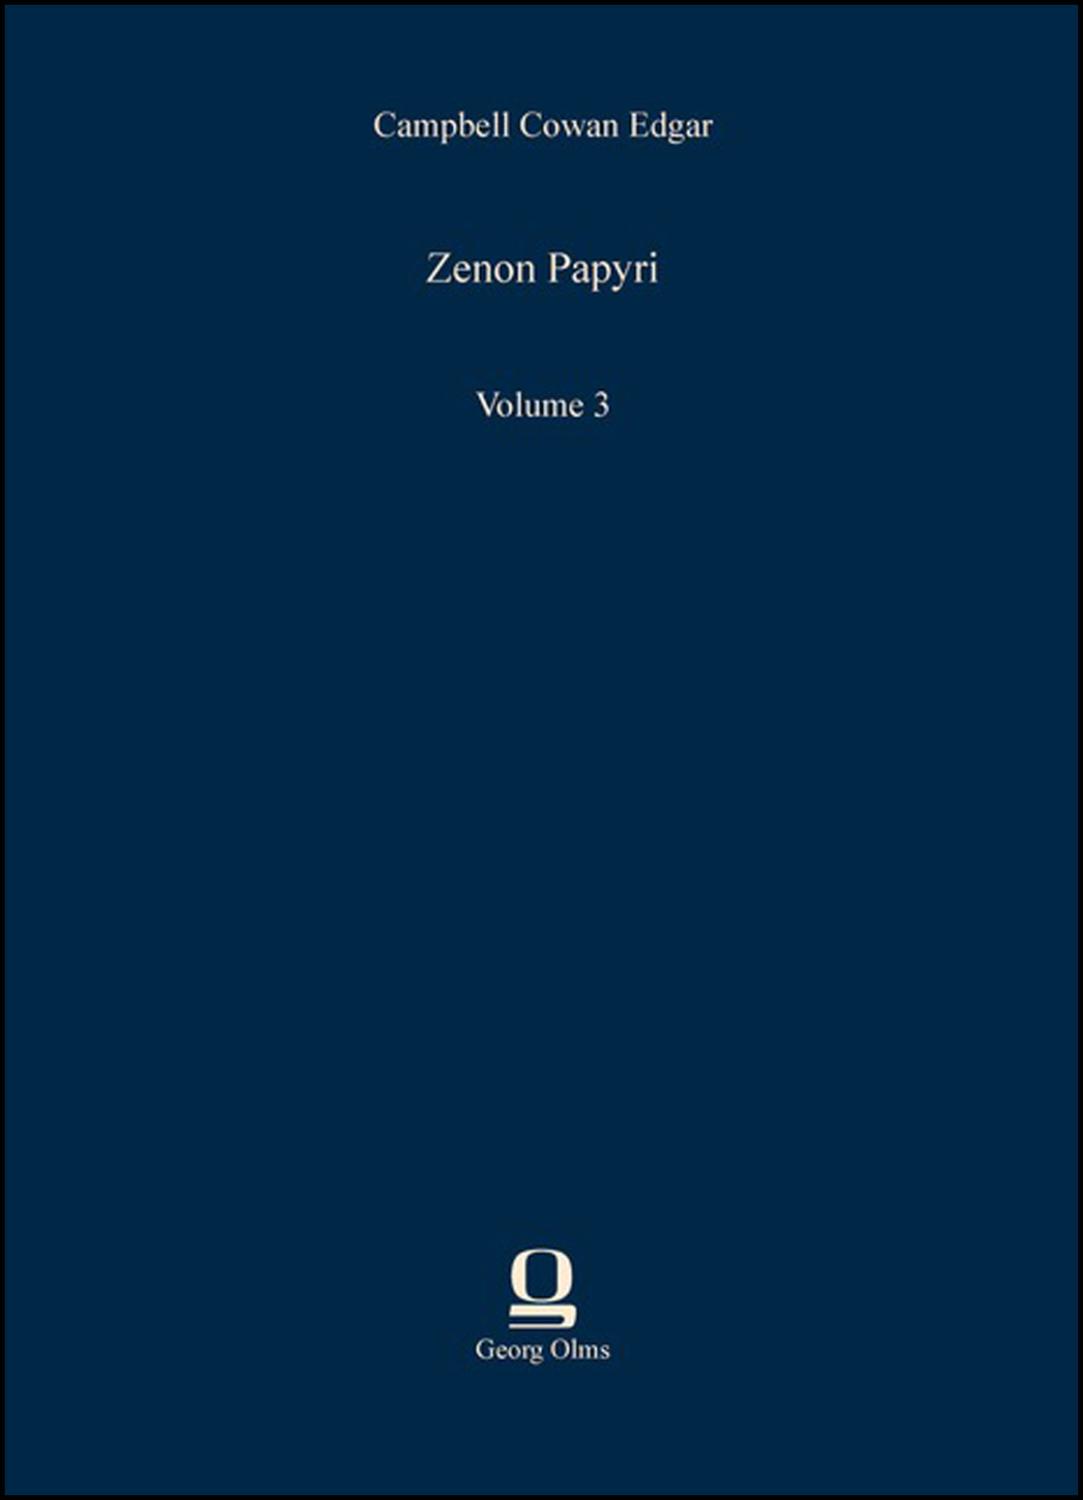 Zenon Papyri: Volume 3